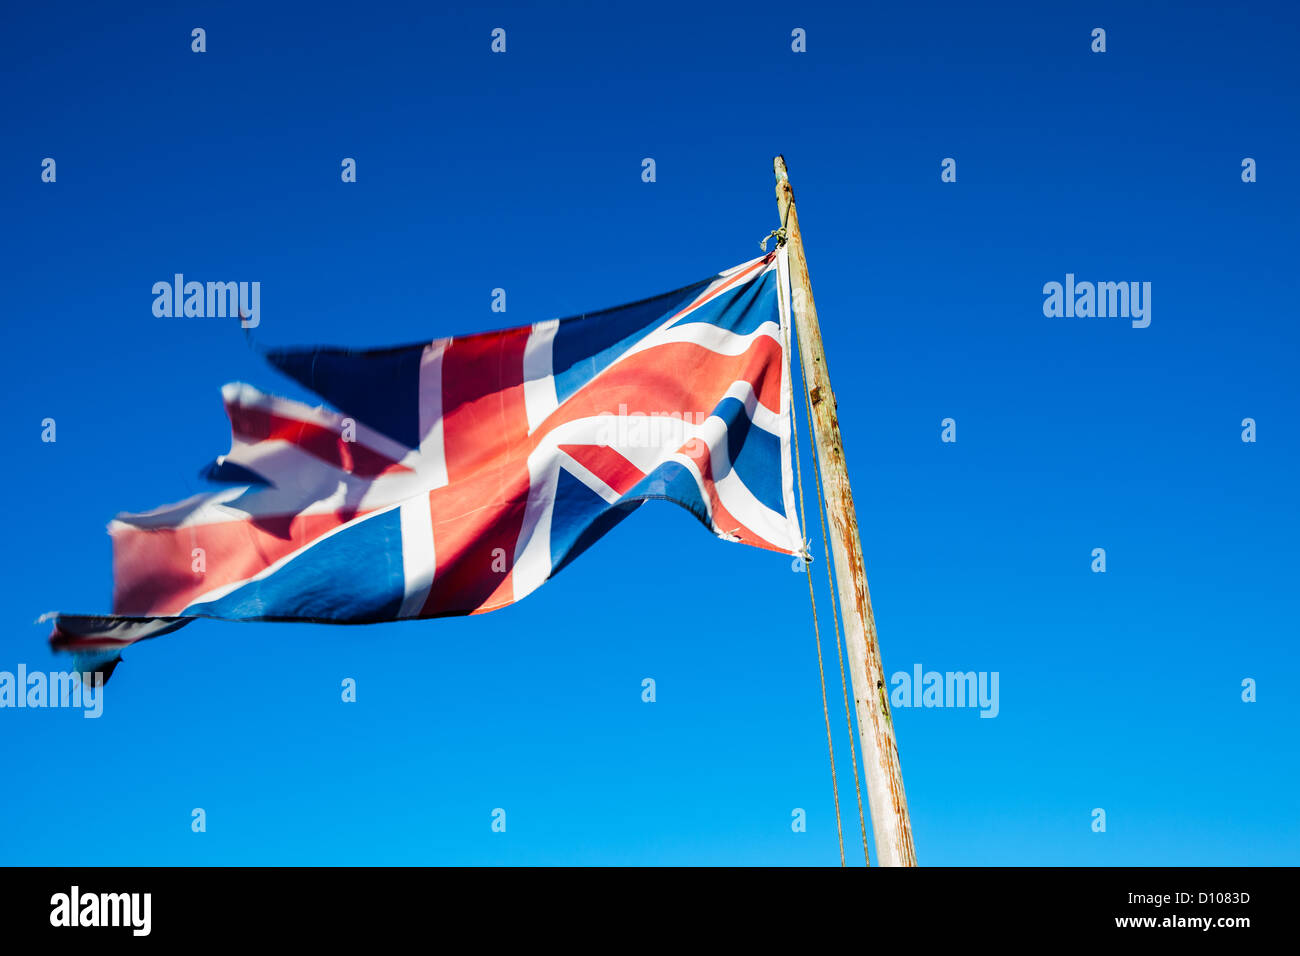 Zerlumpt, zerrissen und vernachlässigten Union Jack, die britische Nationalflagge, auf eine Fahnenstange vor einem strahlend blauen Himmel. Stockfoto